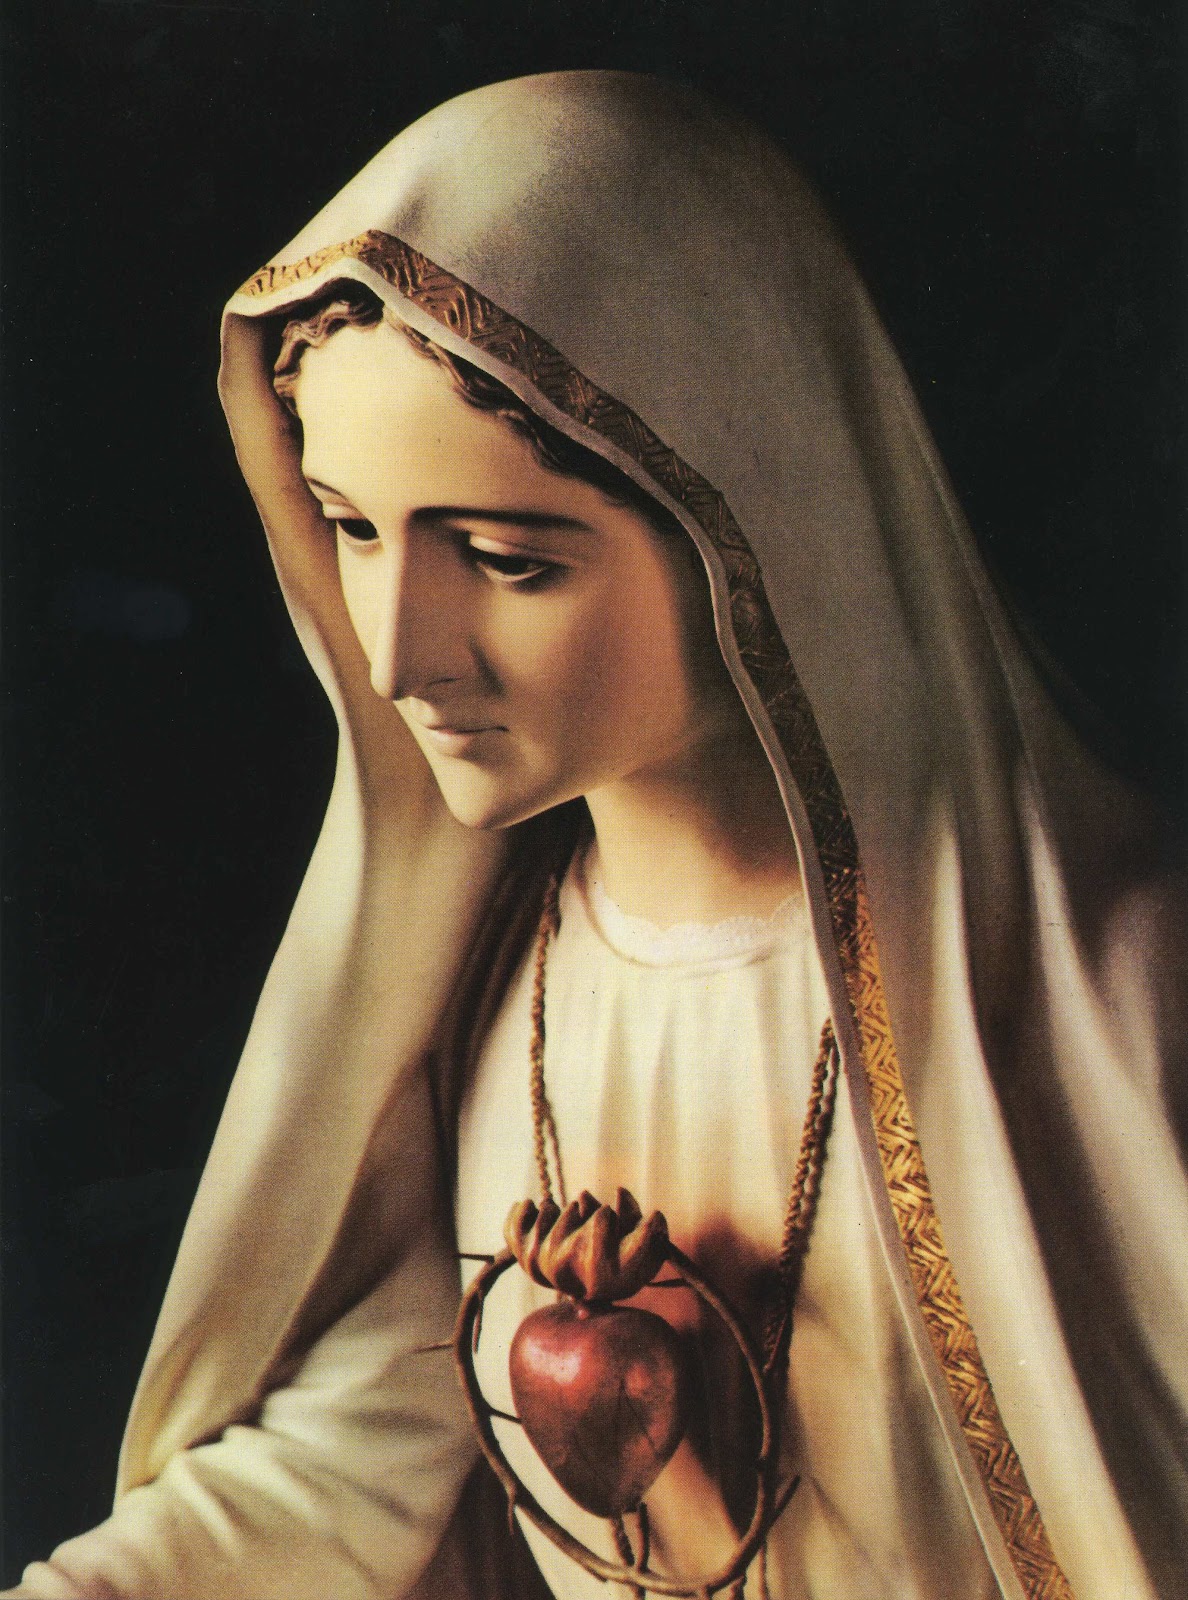 Inmaculado Corazón de María